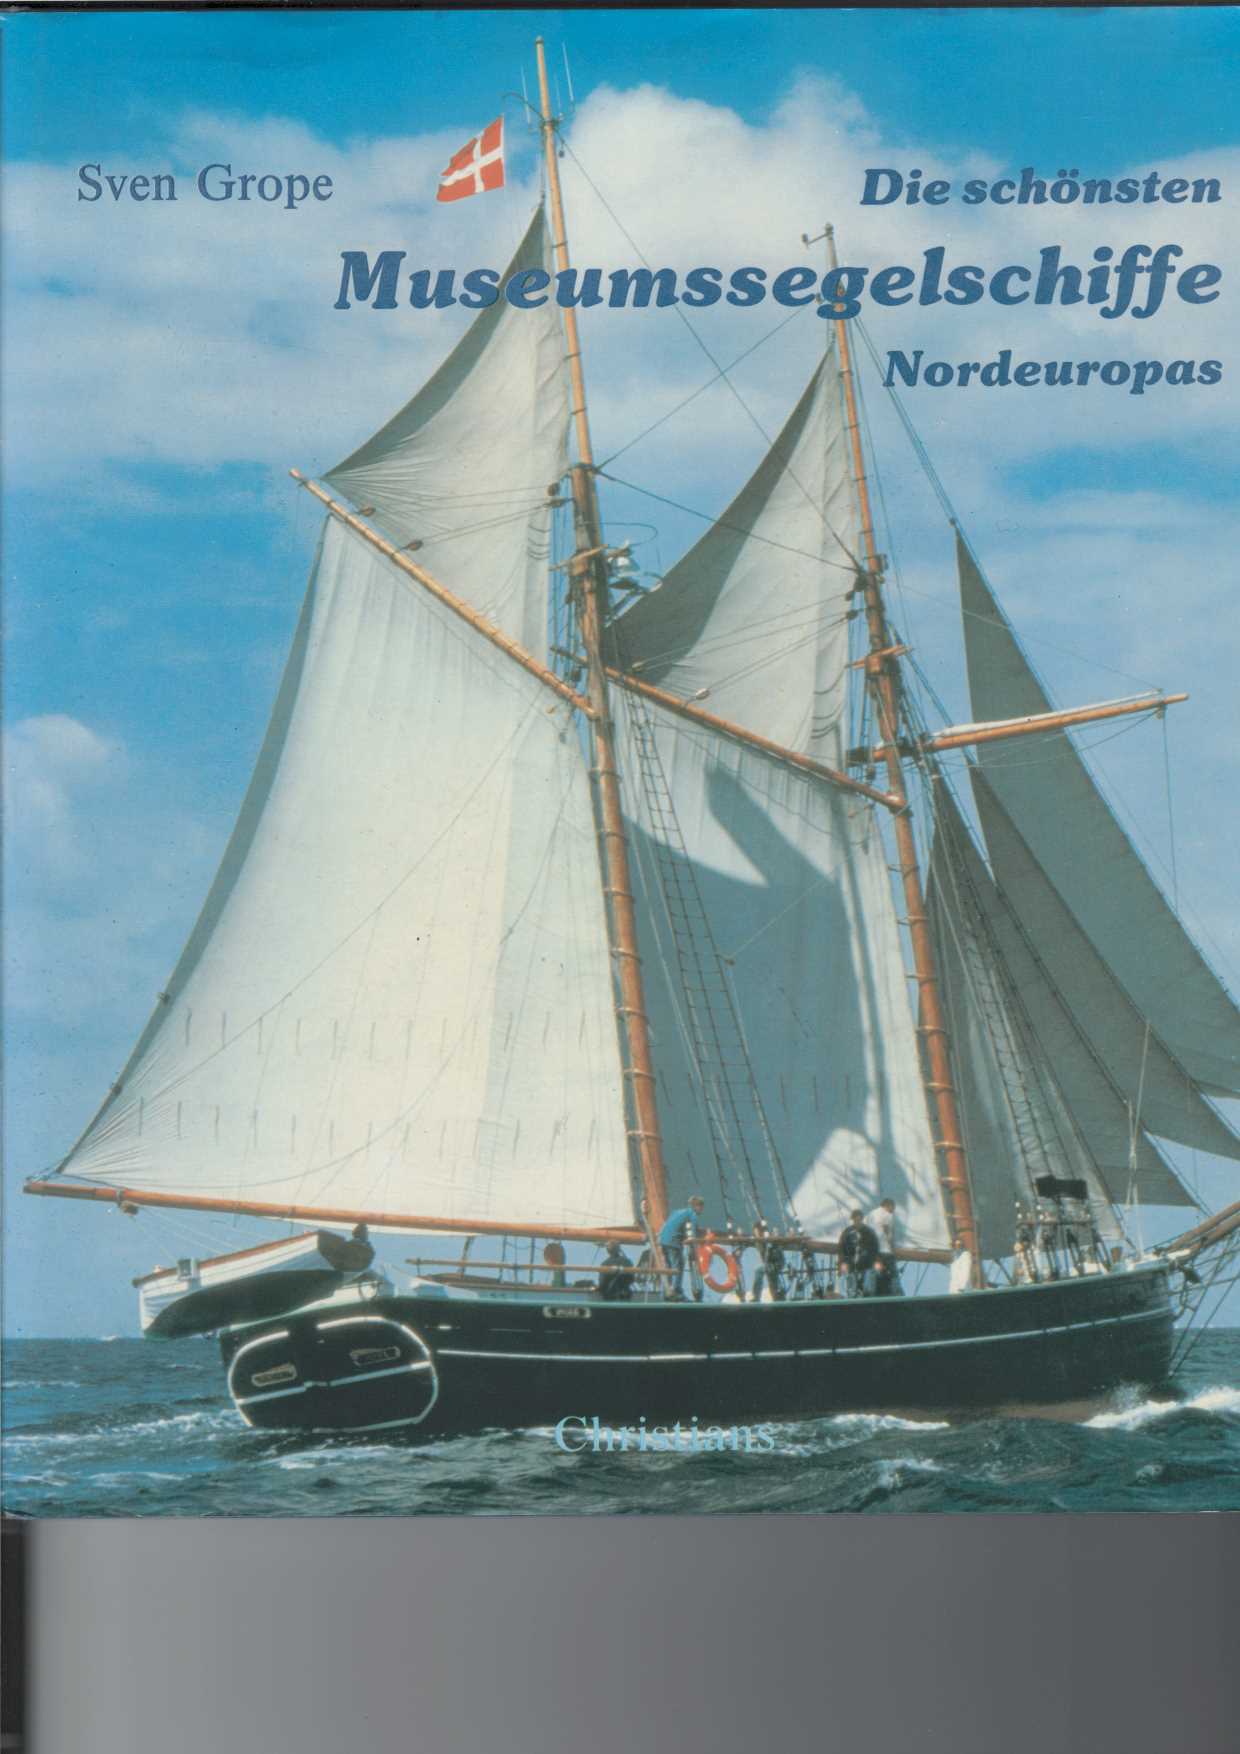 Grope, Sven:  Die schnsten Museumssegelschiffe Nordeuropas. 